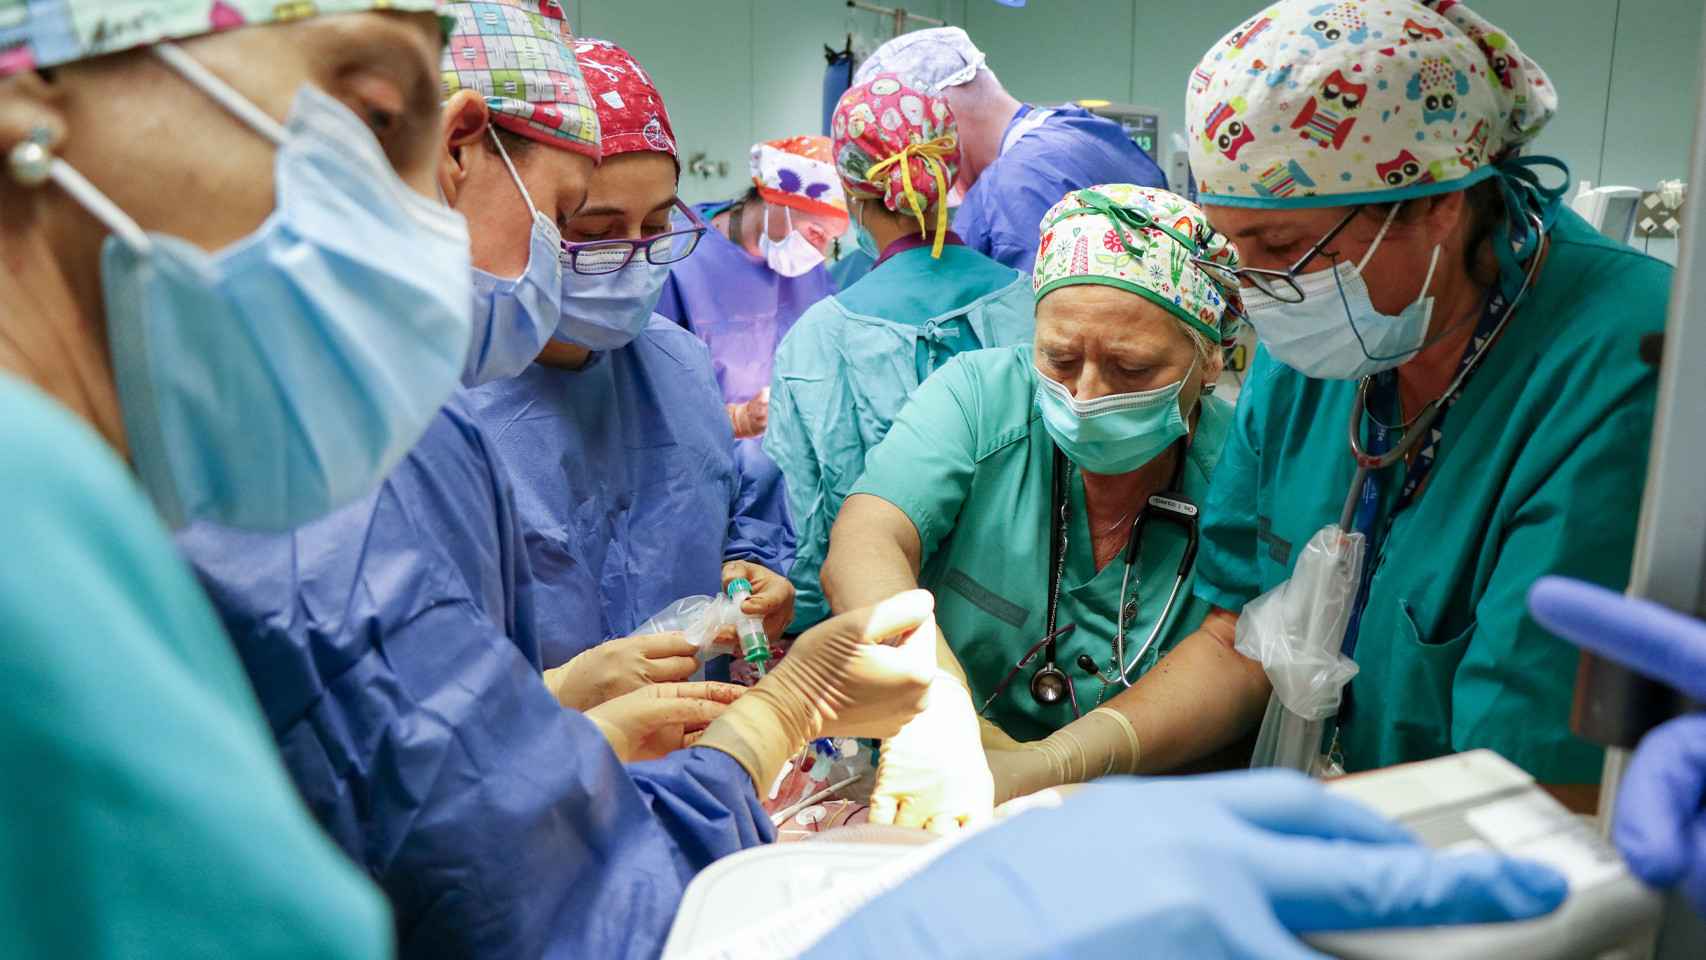 En la intervención participaron dos equipos quirúrgicos completos.